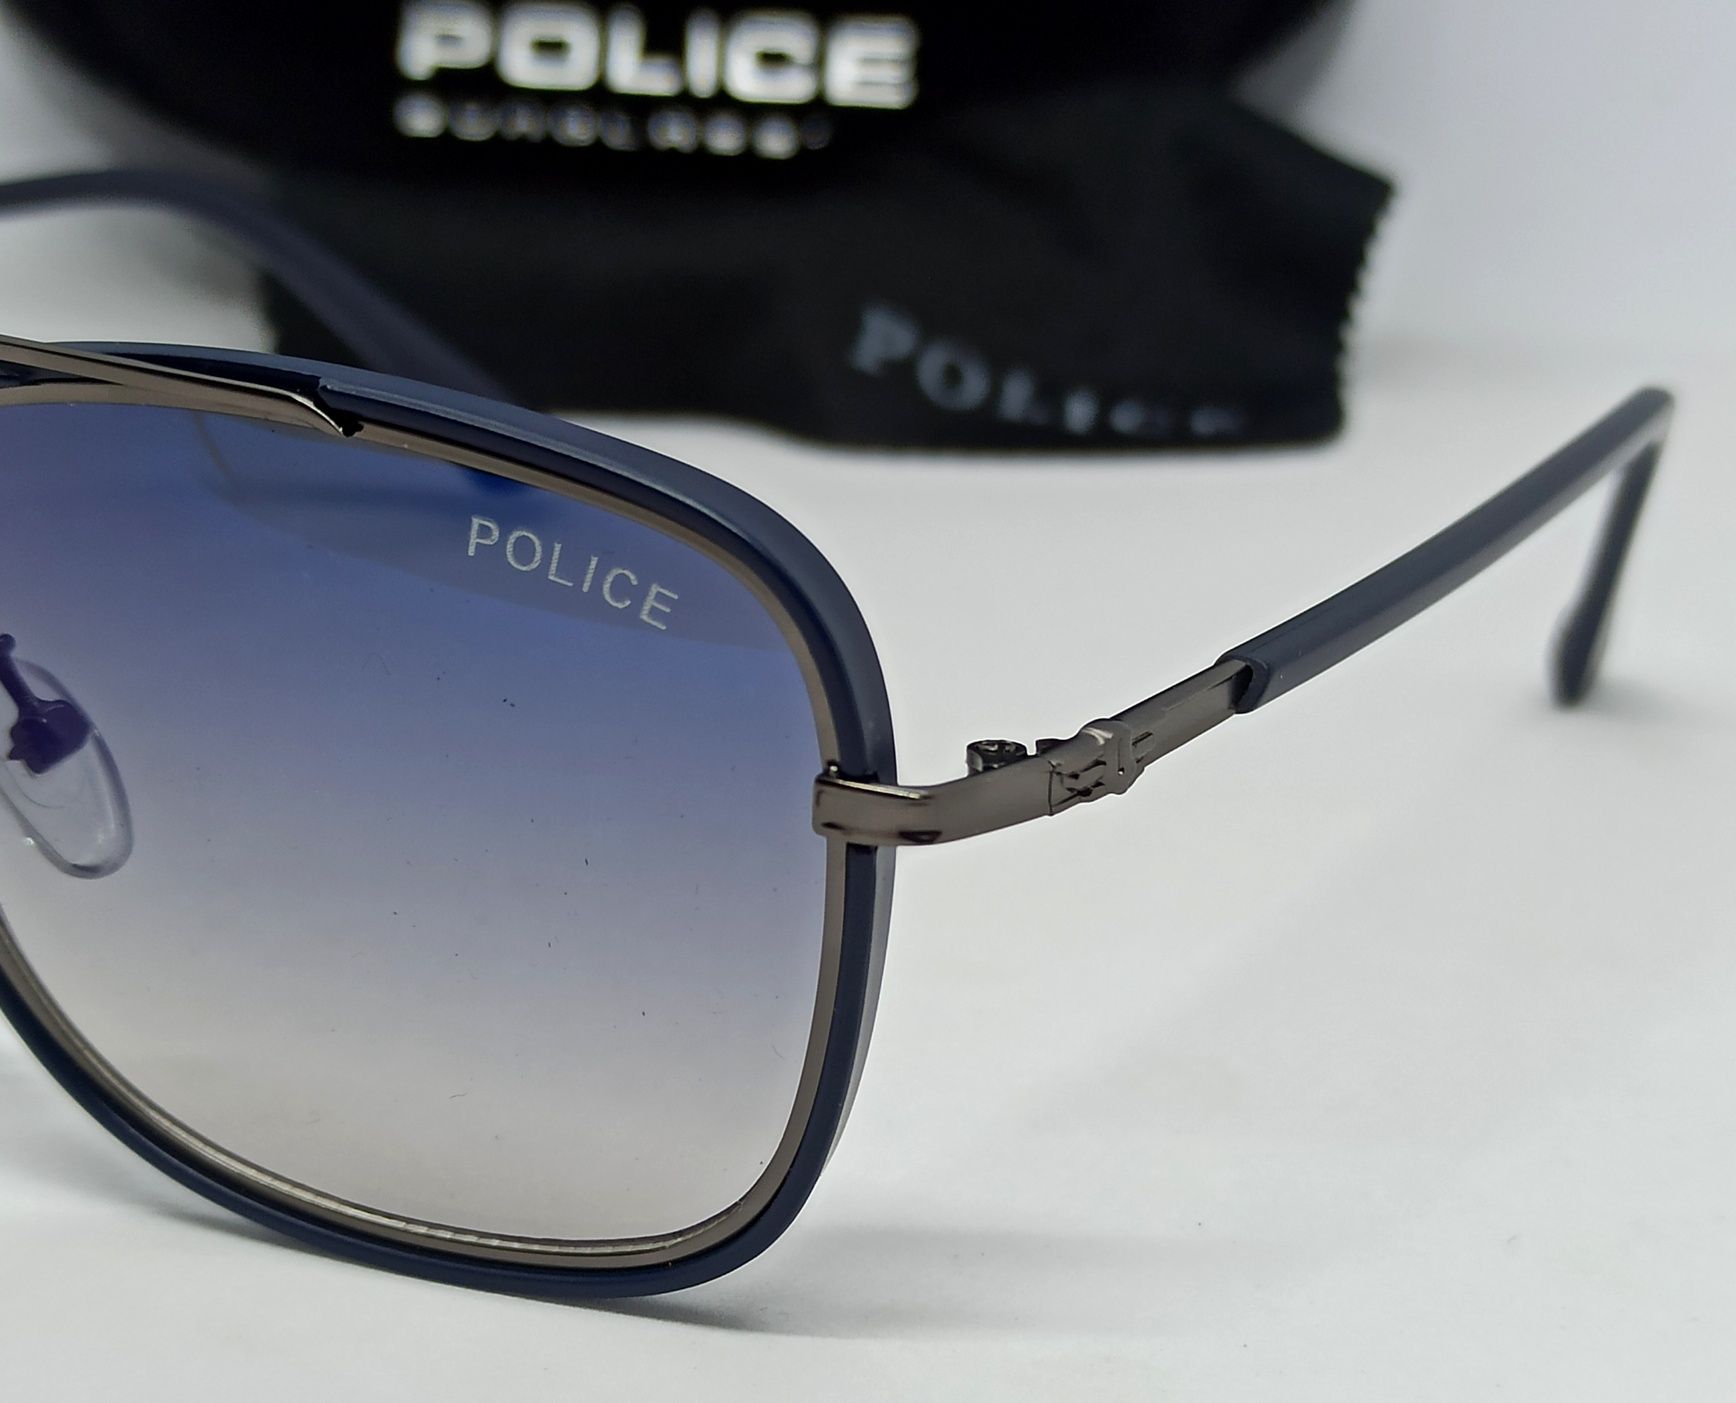 Police очки унисекс модные сине фиолетовый градиент слегка зеркальные